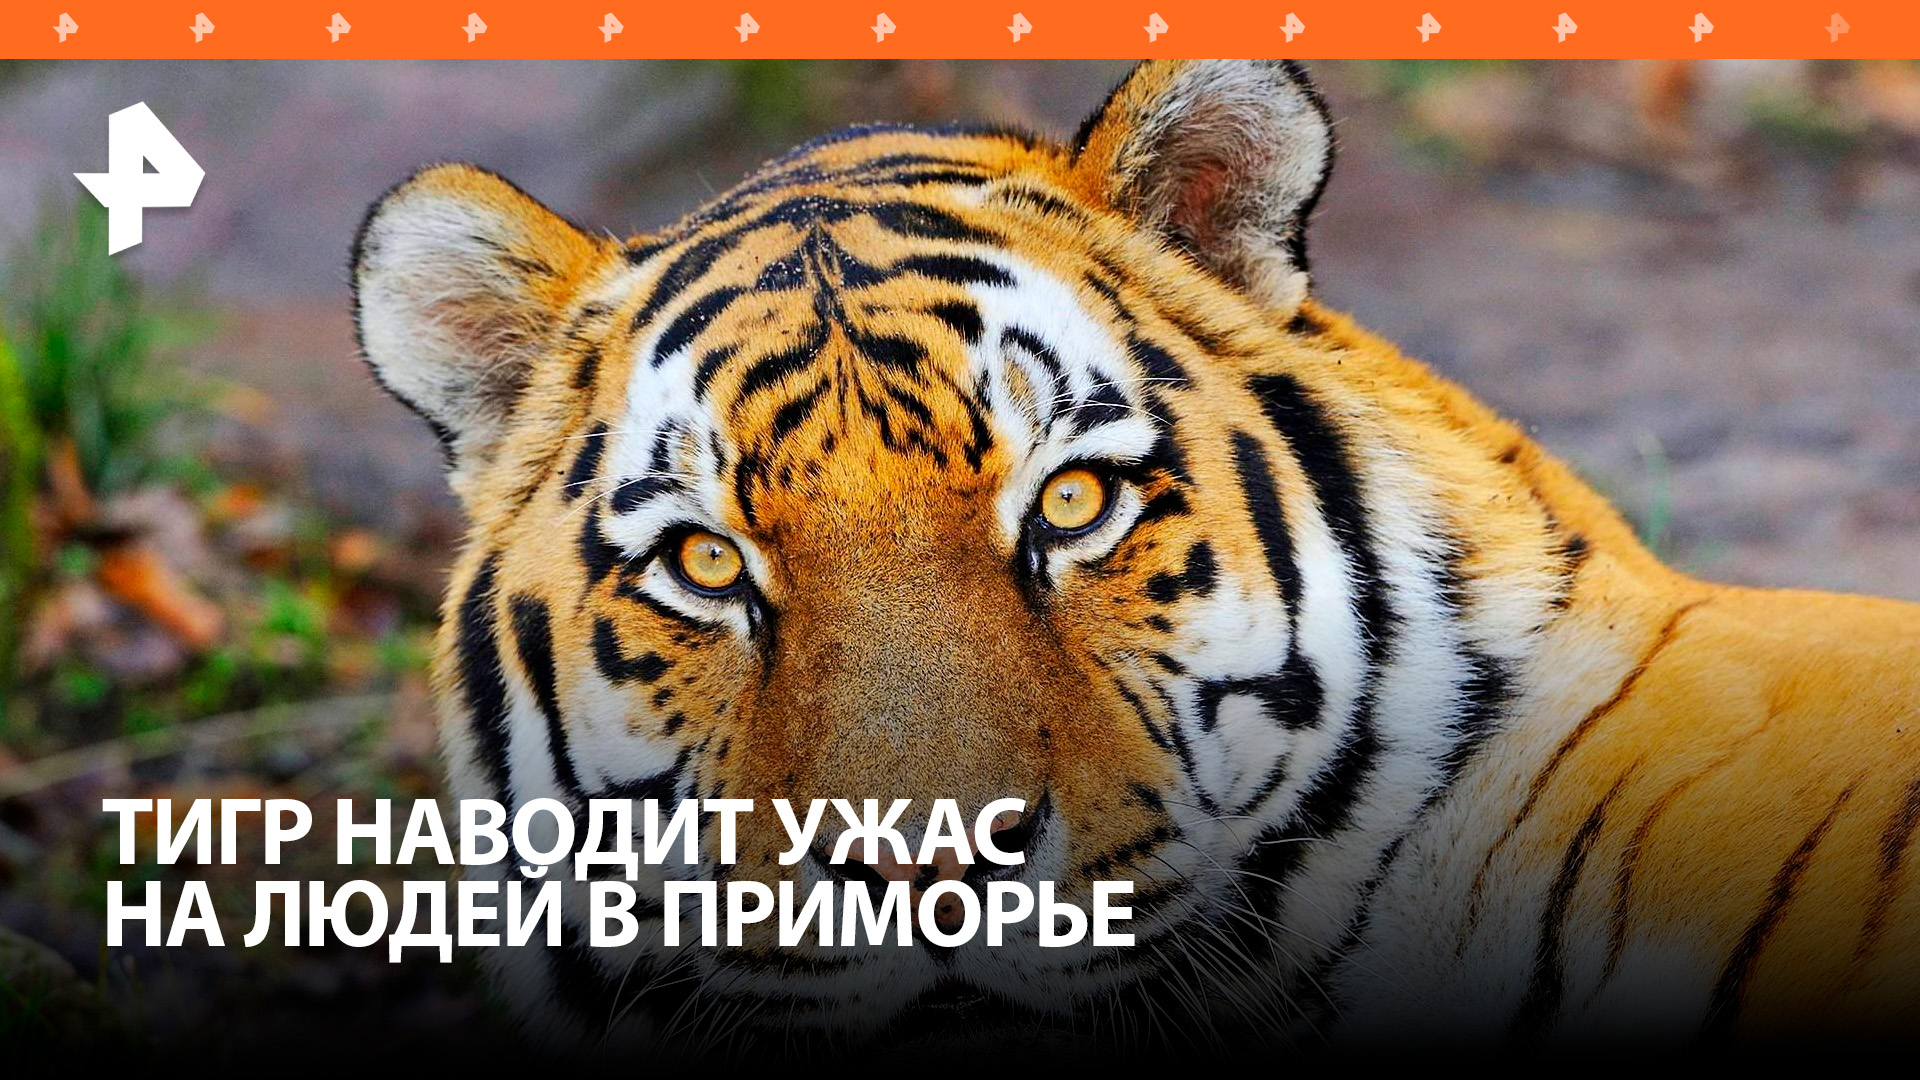 Тигр наводит ужас на жителей Приморья / РЕН Новости